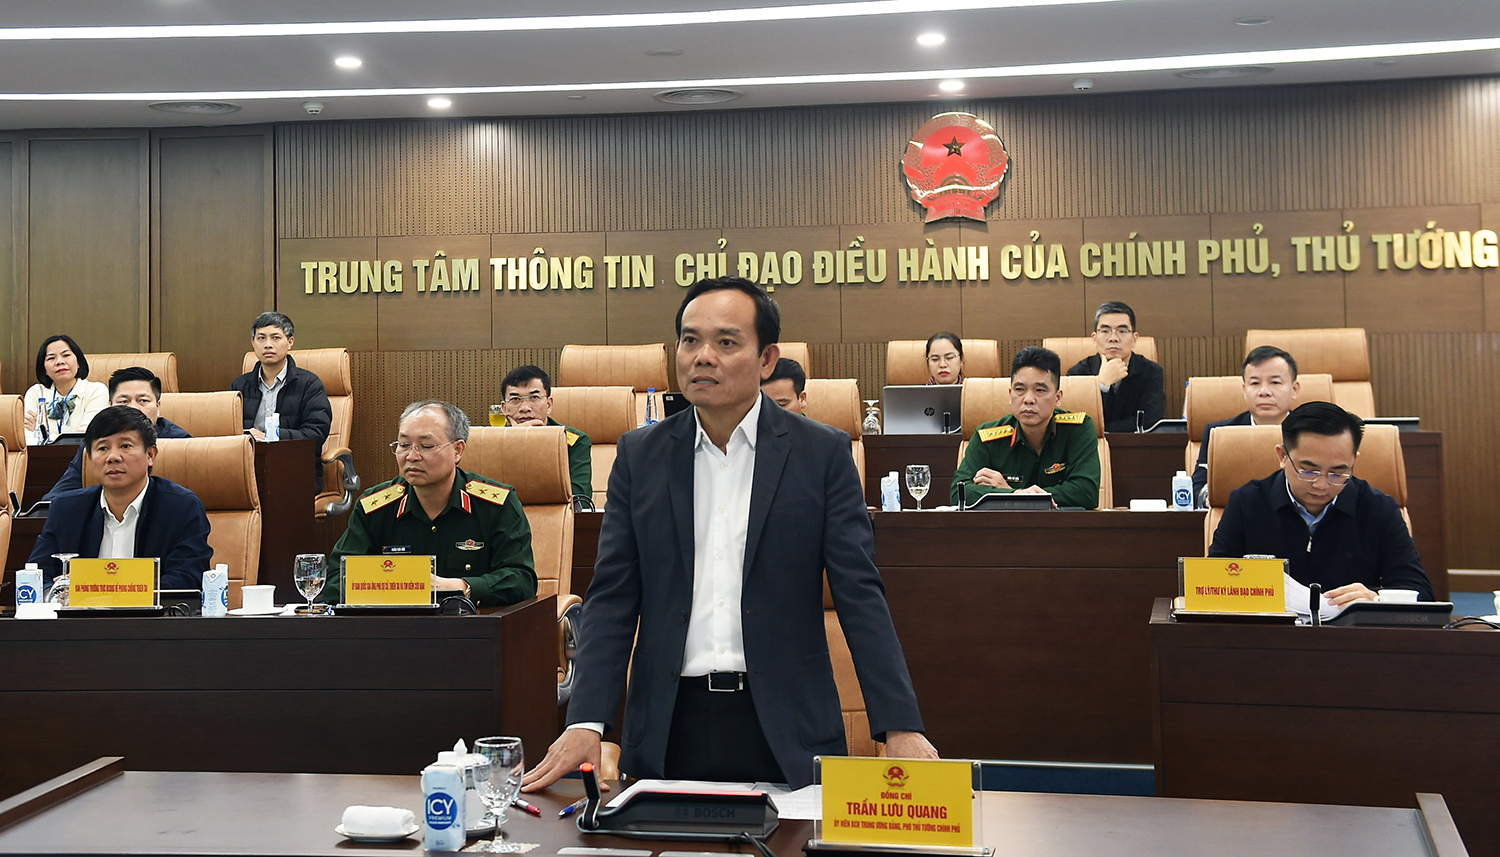 Phó Thủ tướng Trần Lưu Quang chủ trì họp trực tuyến với tỉnh Thừa Thiên Huế về công tác phòng, chống và khắc phục hậu quả mưa lũ trên địa bàn tỉnh - Ảnh: VGP/Hải Minh